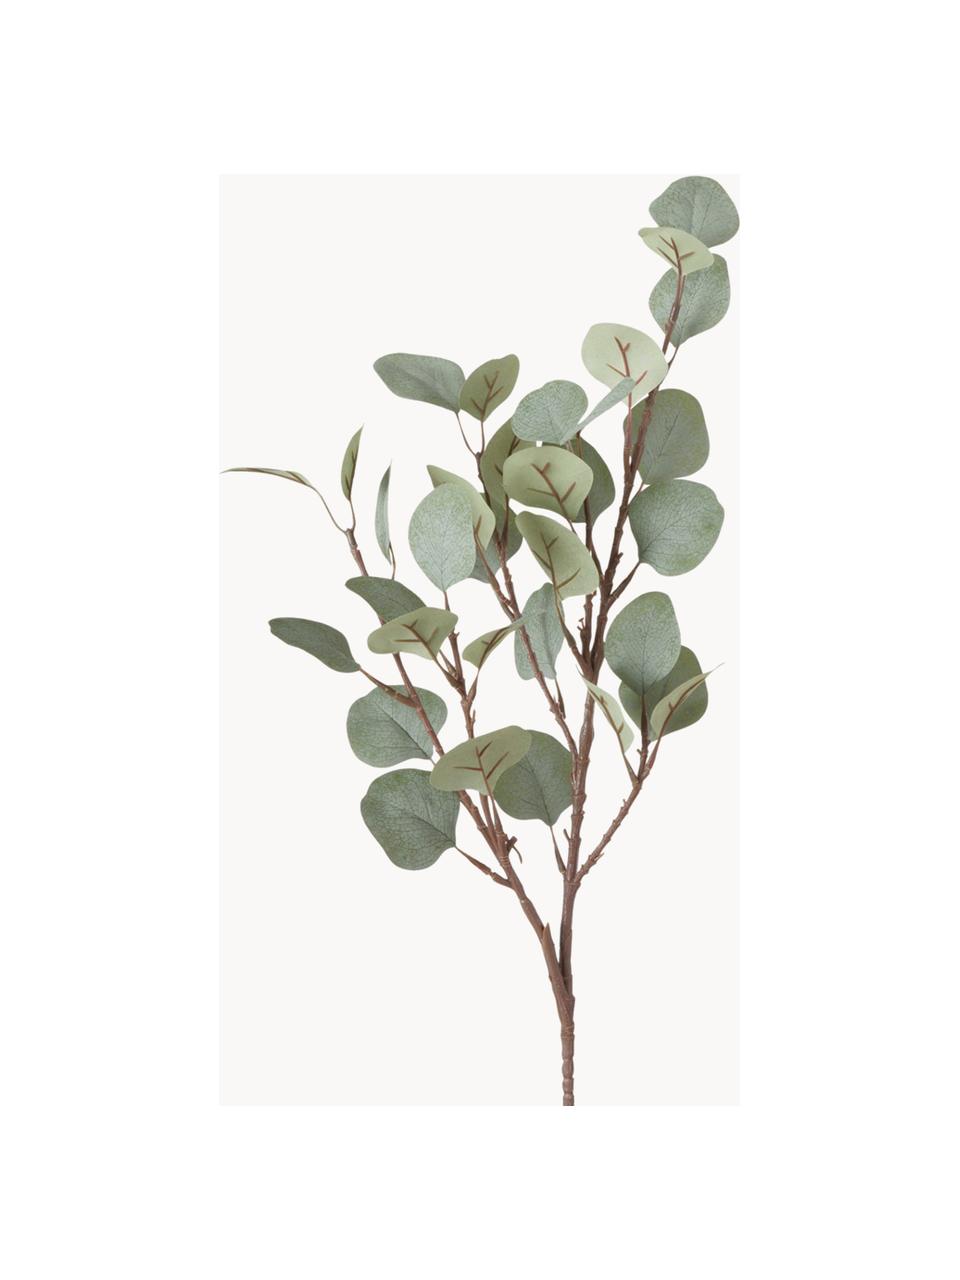 Dekoracyjna gałązka Eukalyptus, Tworzywo sztuczne, Brązowy, szałwiowy zielony, D 69 cm